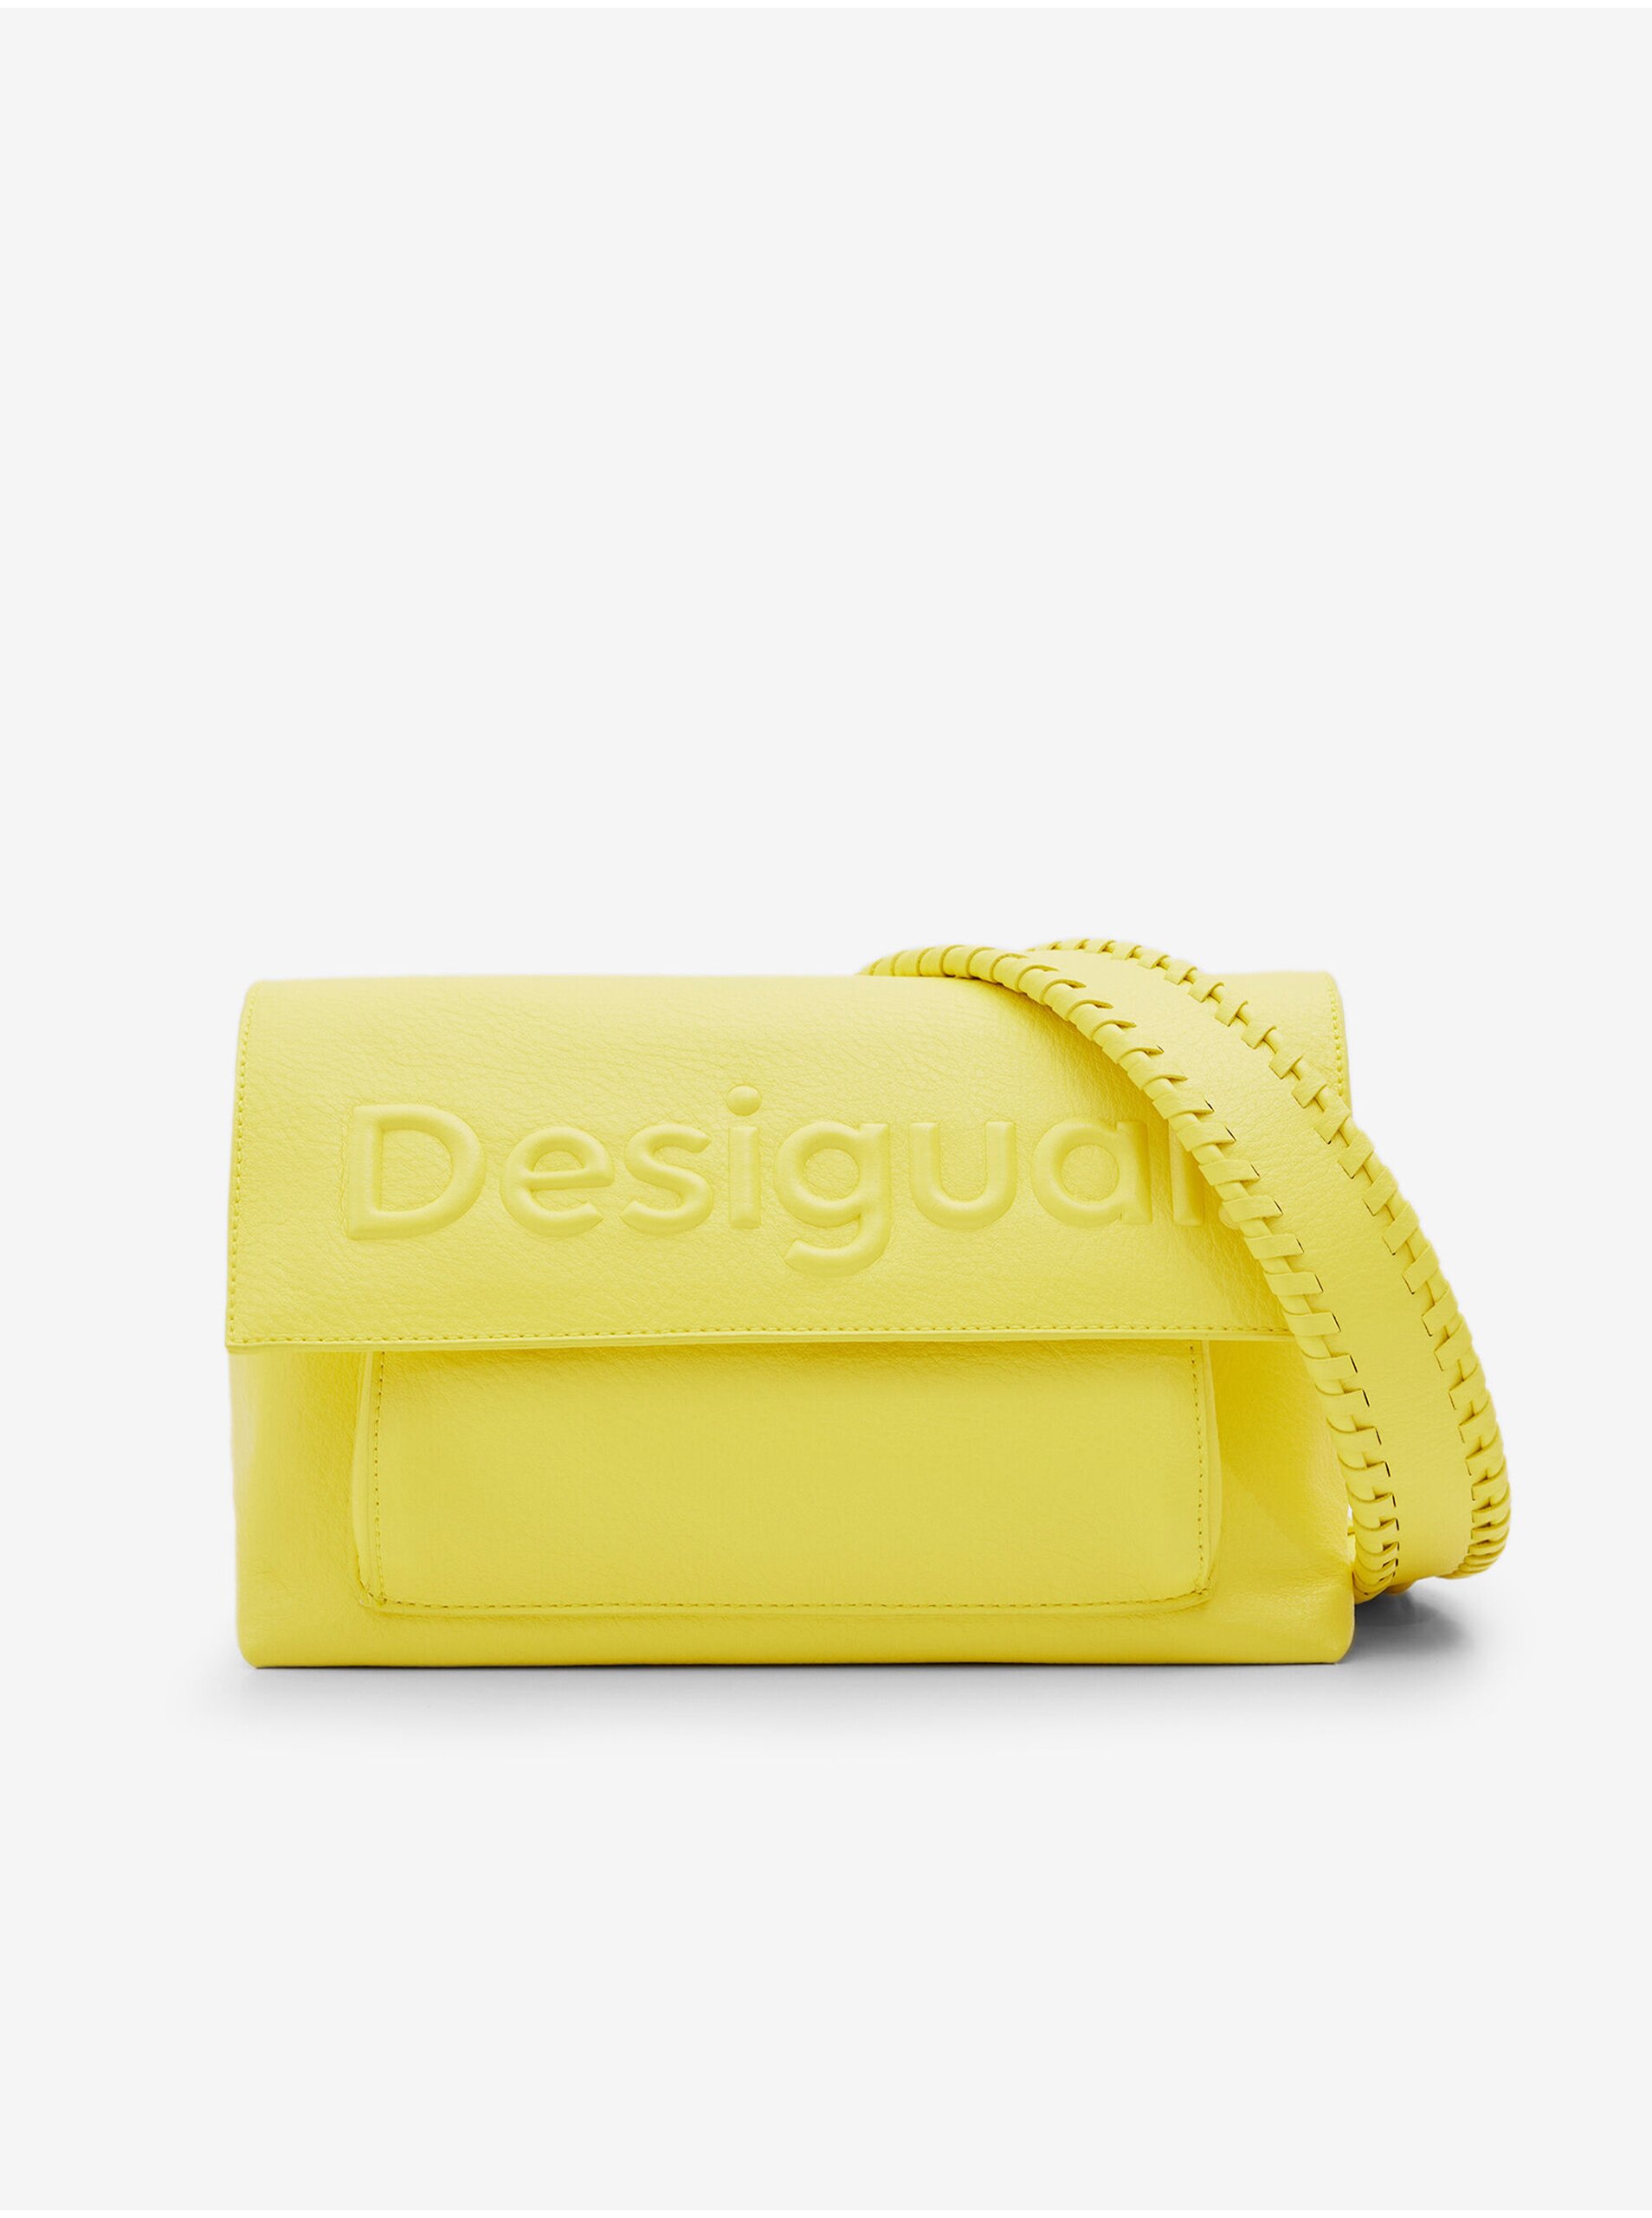 Women's yellow handbag Desigual Venecia 2.0 - Ladies